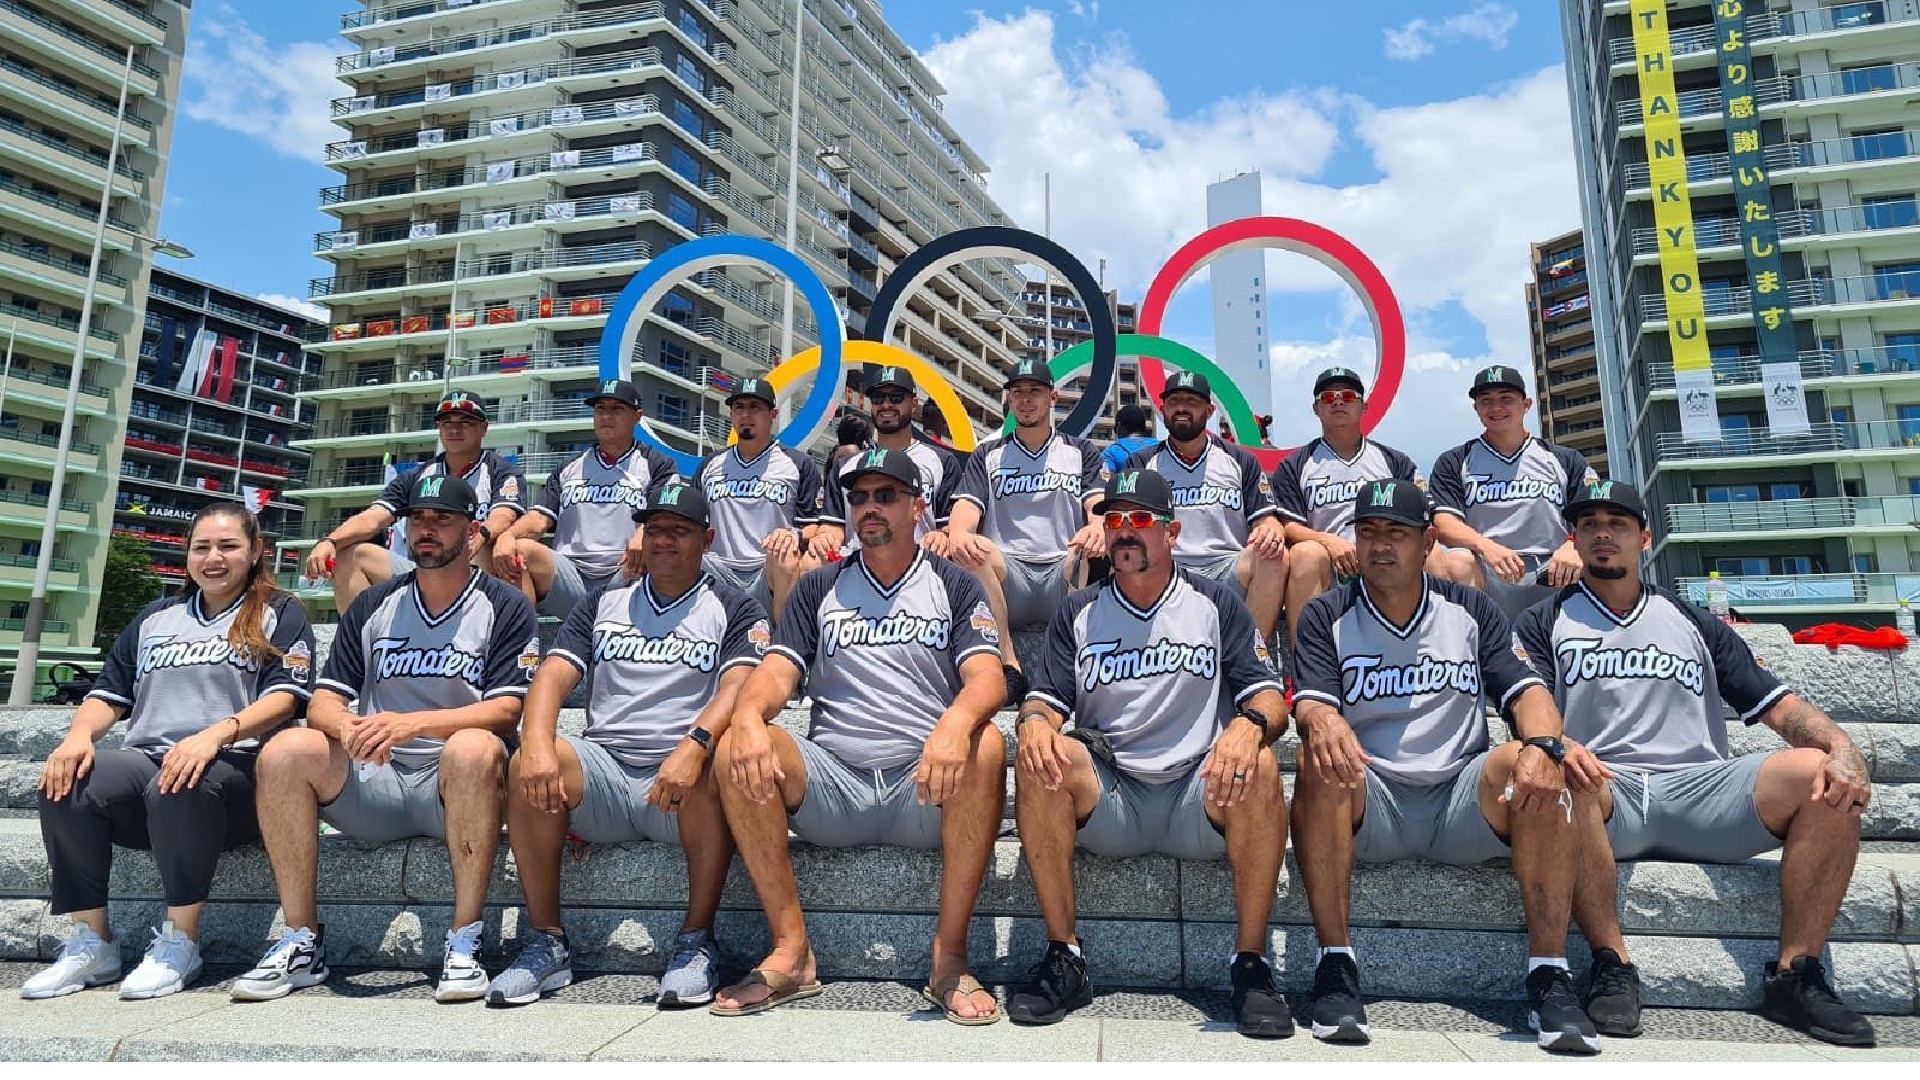 Los peloteros posan frente a los icónicos aros olímpicos, una foto que se ha vuelto obligatoria entre participantes (Foto: Twitter/fersch_4)